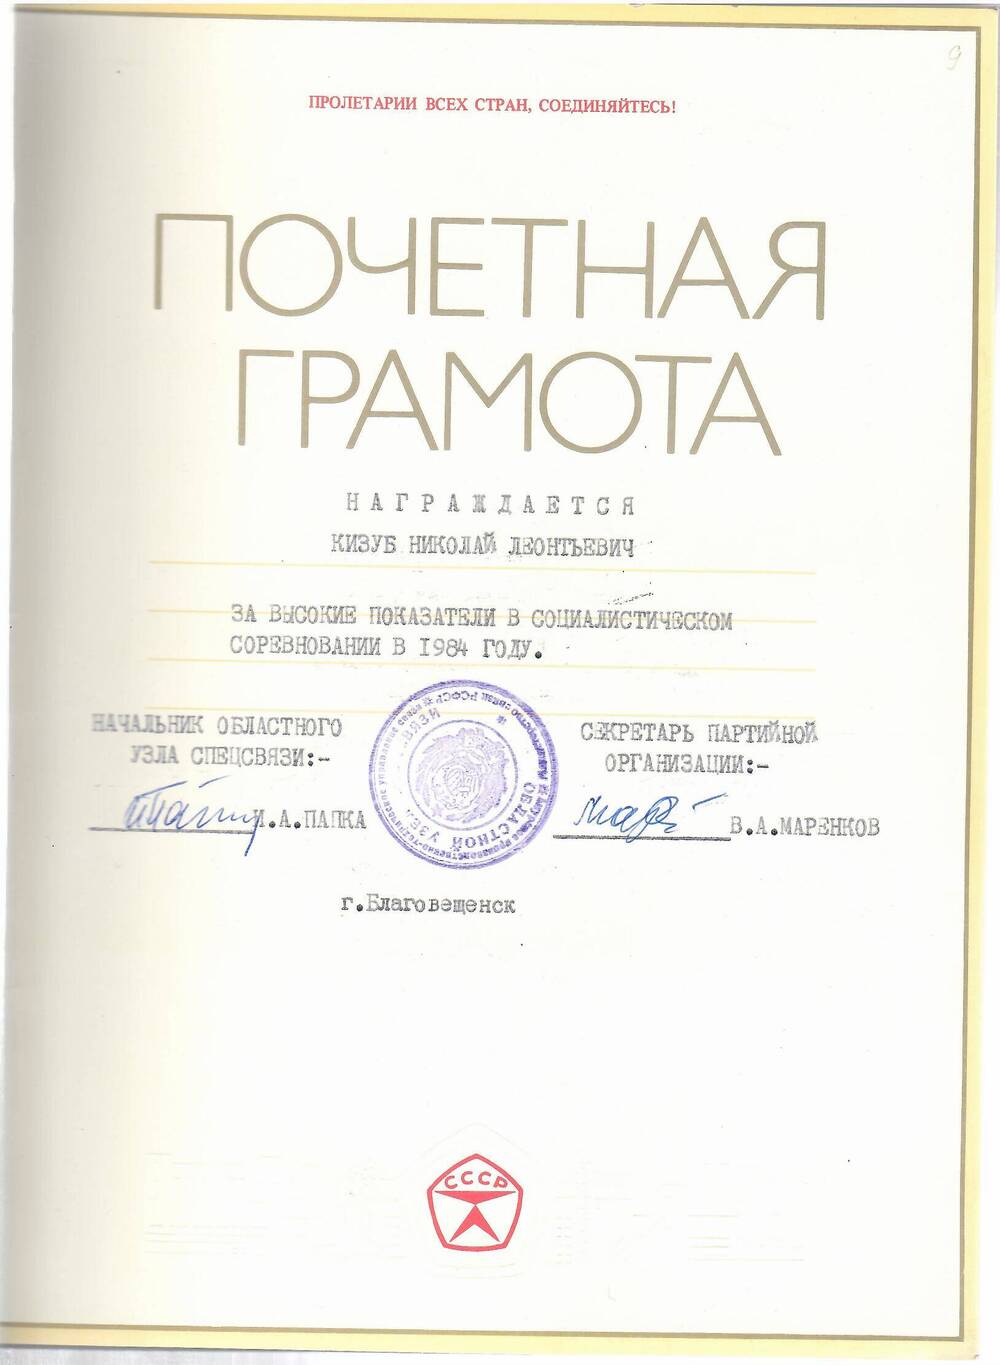 Грамота почётная Кизубу Николаю Леонтьевичу за высокие показатели в социалистическом соревновании в 1984 году